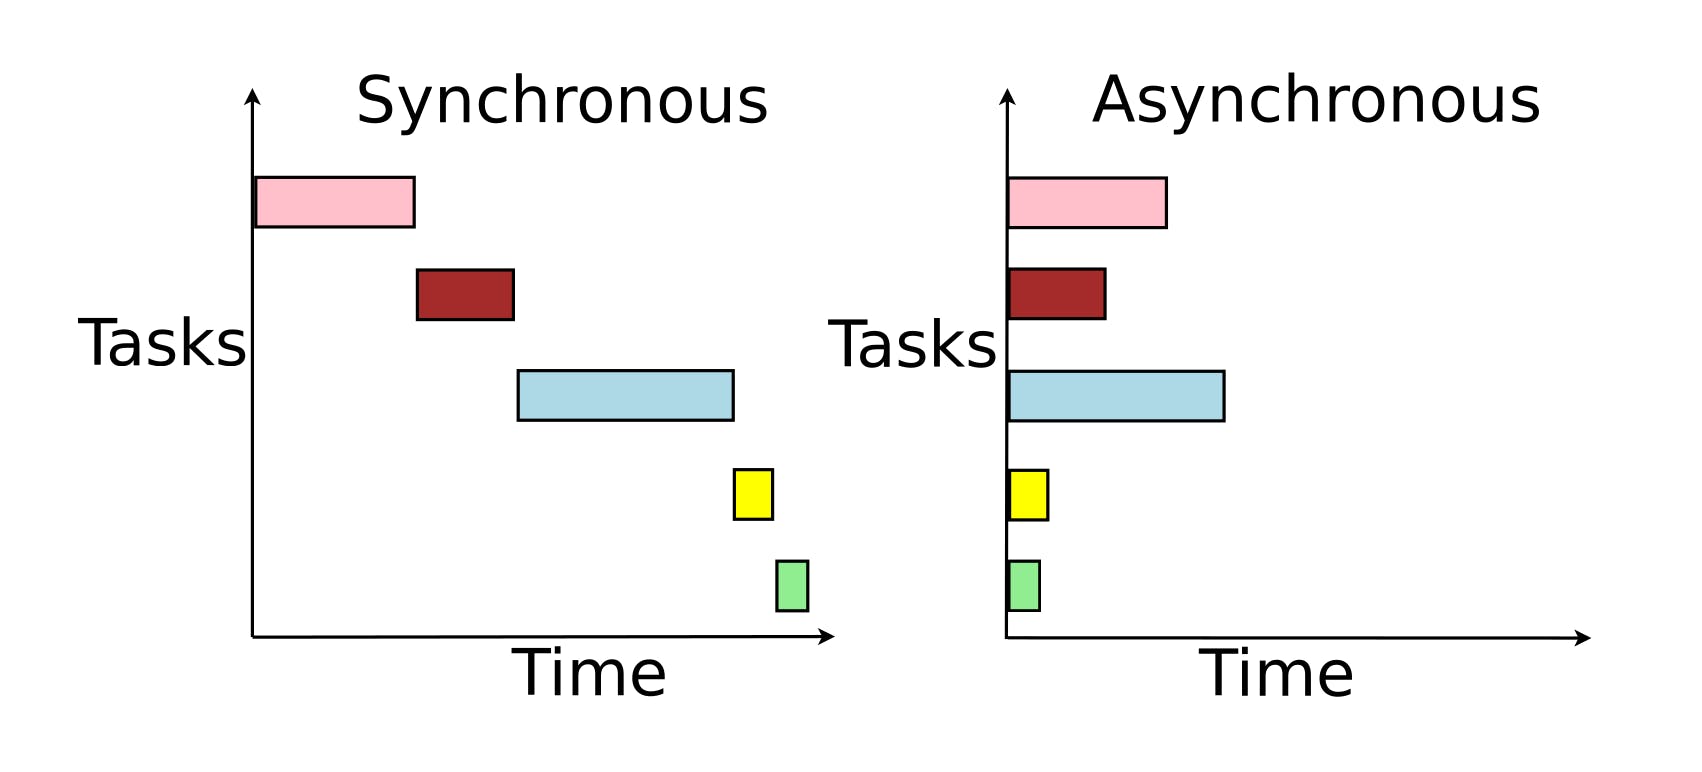 Synchronous vs asynchronous task execution